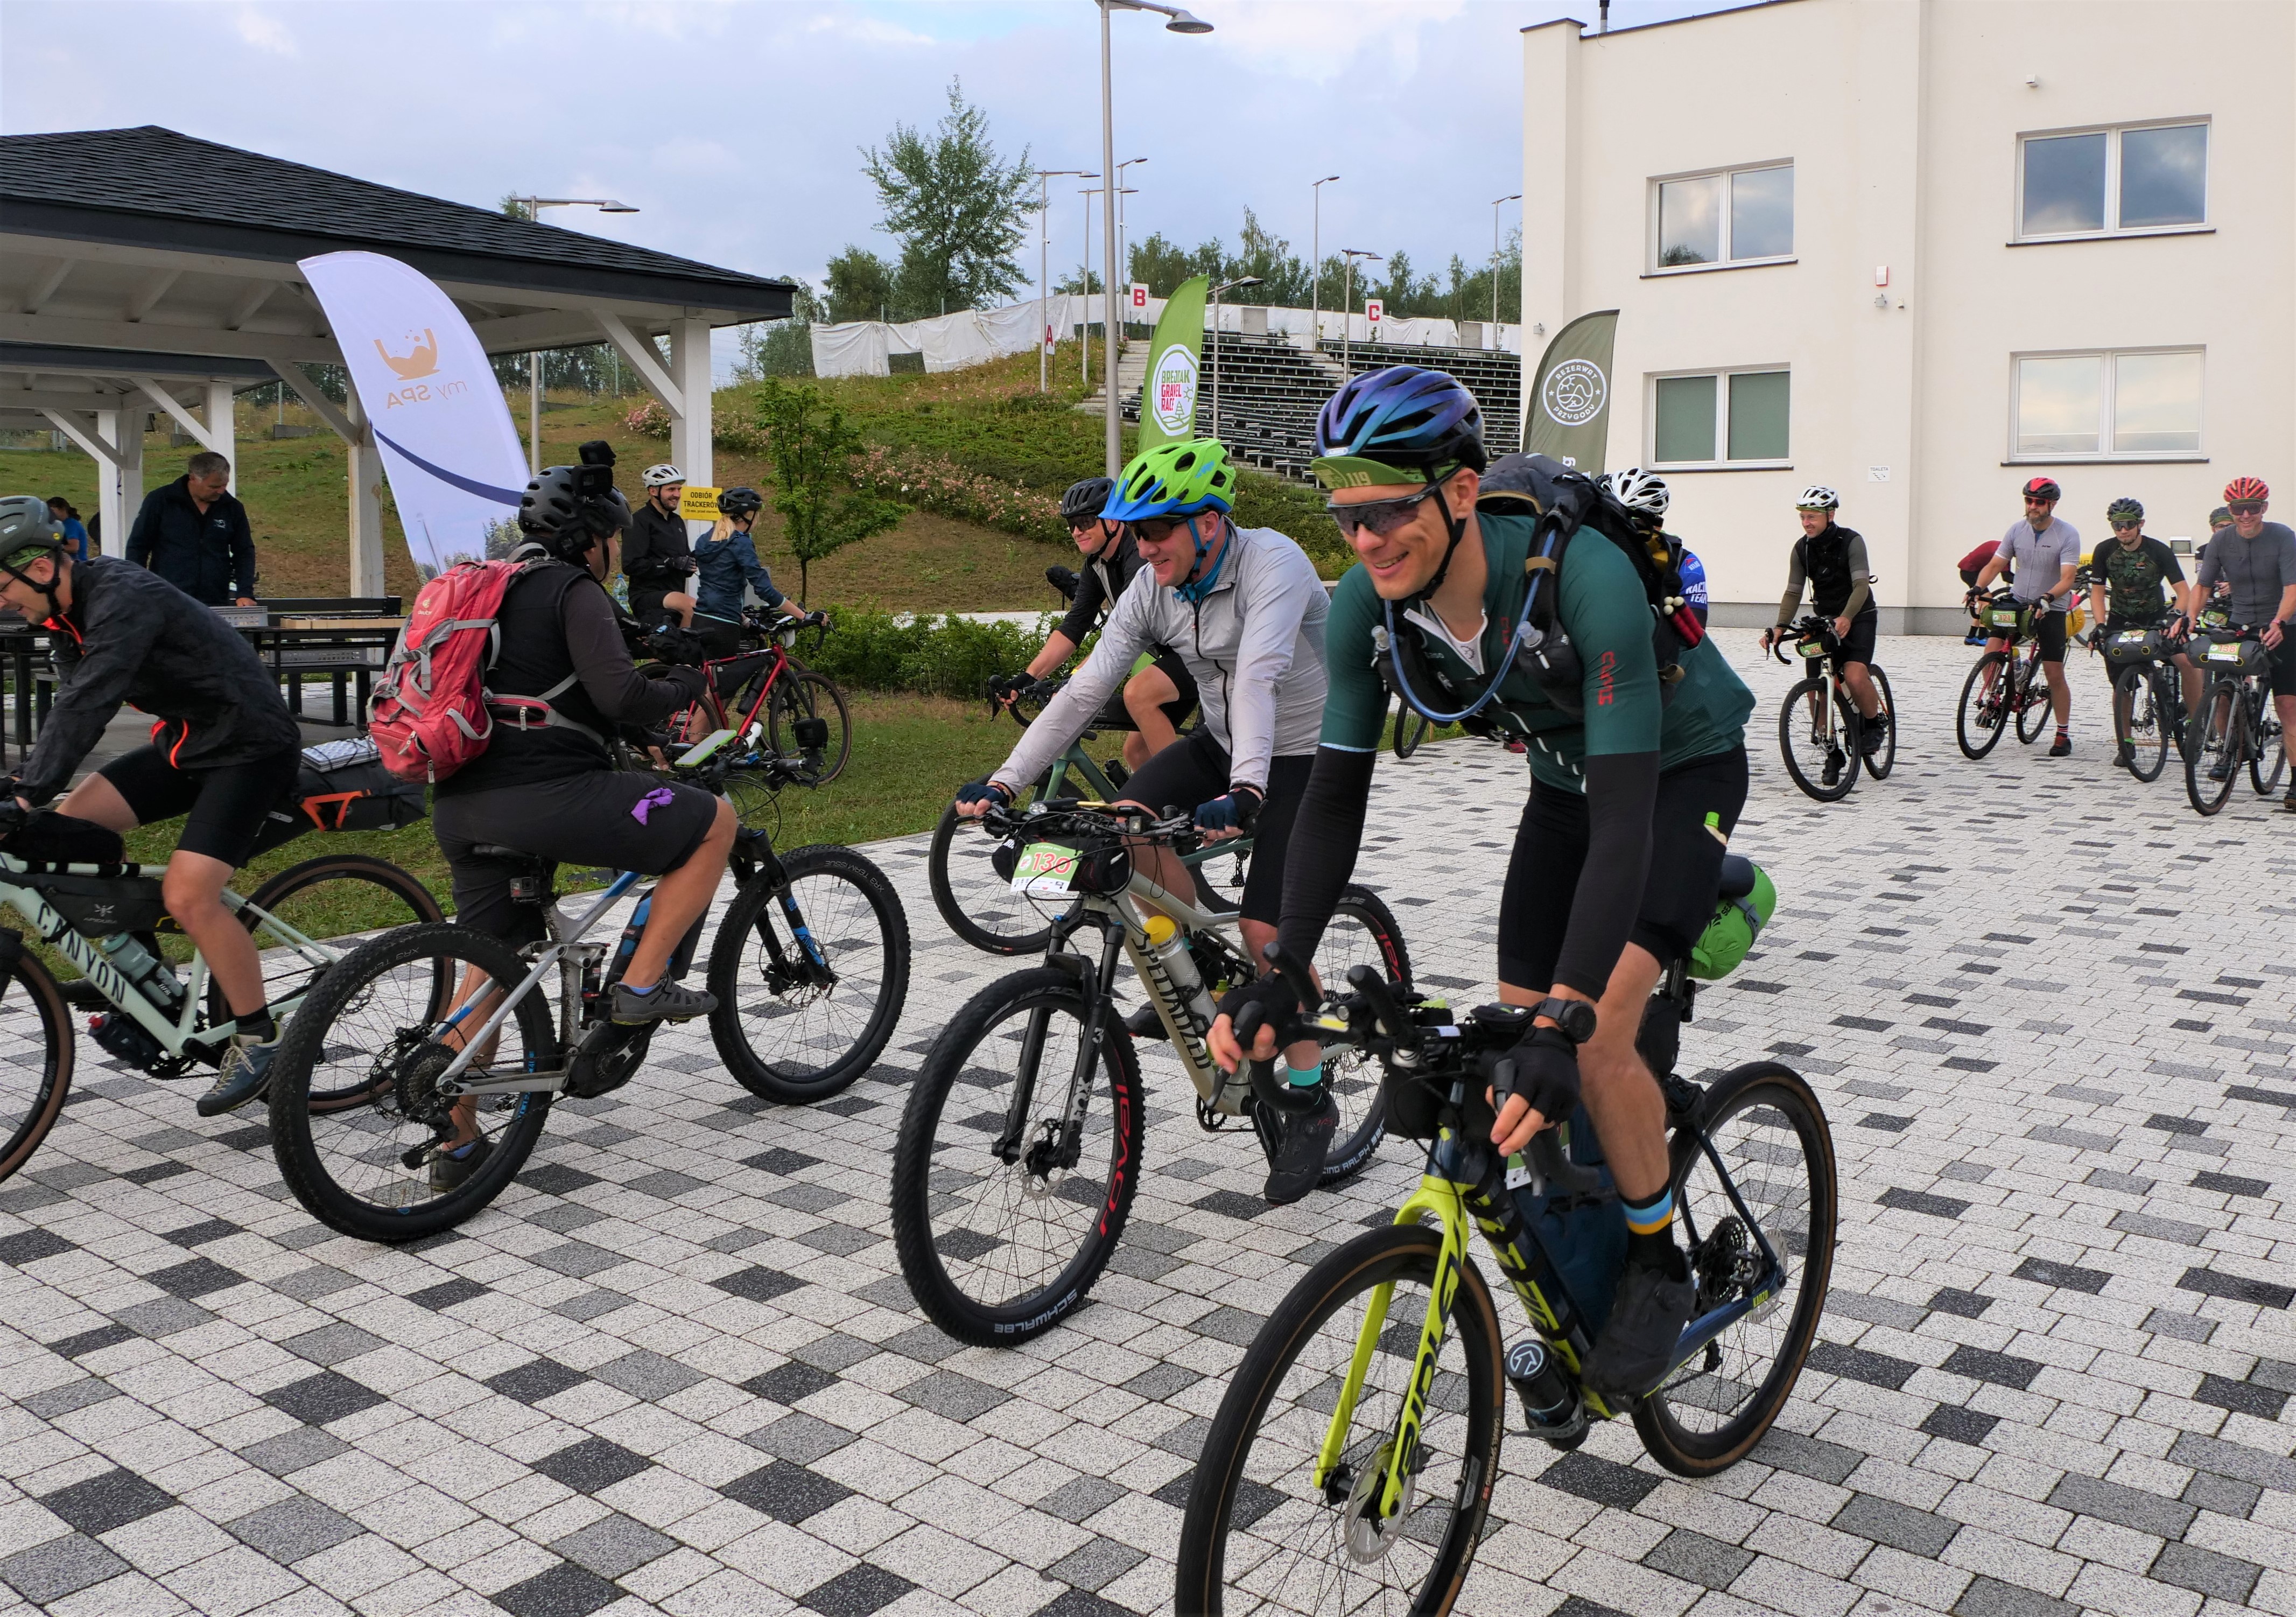 Rajd rowerowy „Brejdak Gravel”. Kilkudziesięciu rowerzystów ma do pokonania 700 km trasę drogami Lubelszczyzny (zdjęcia)